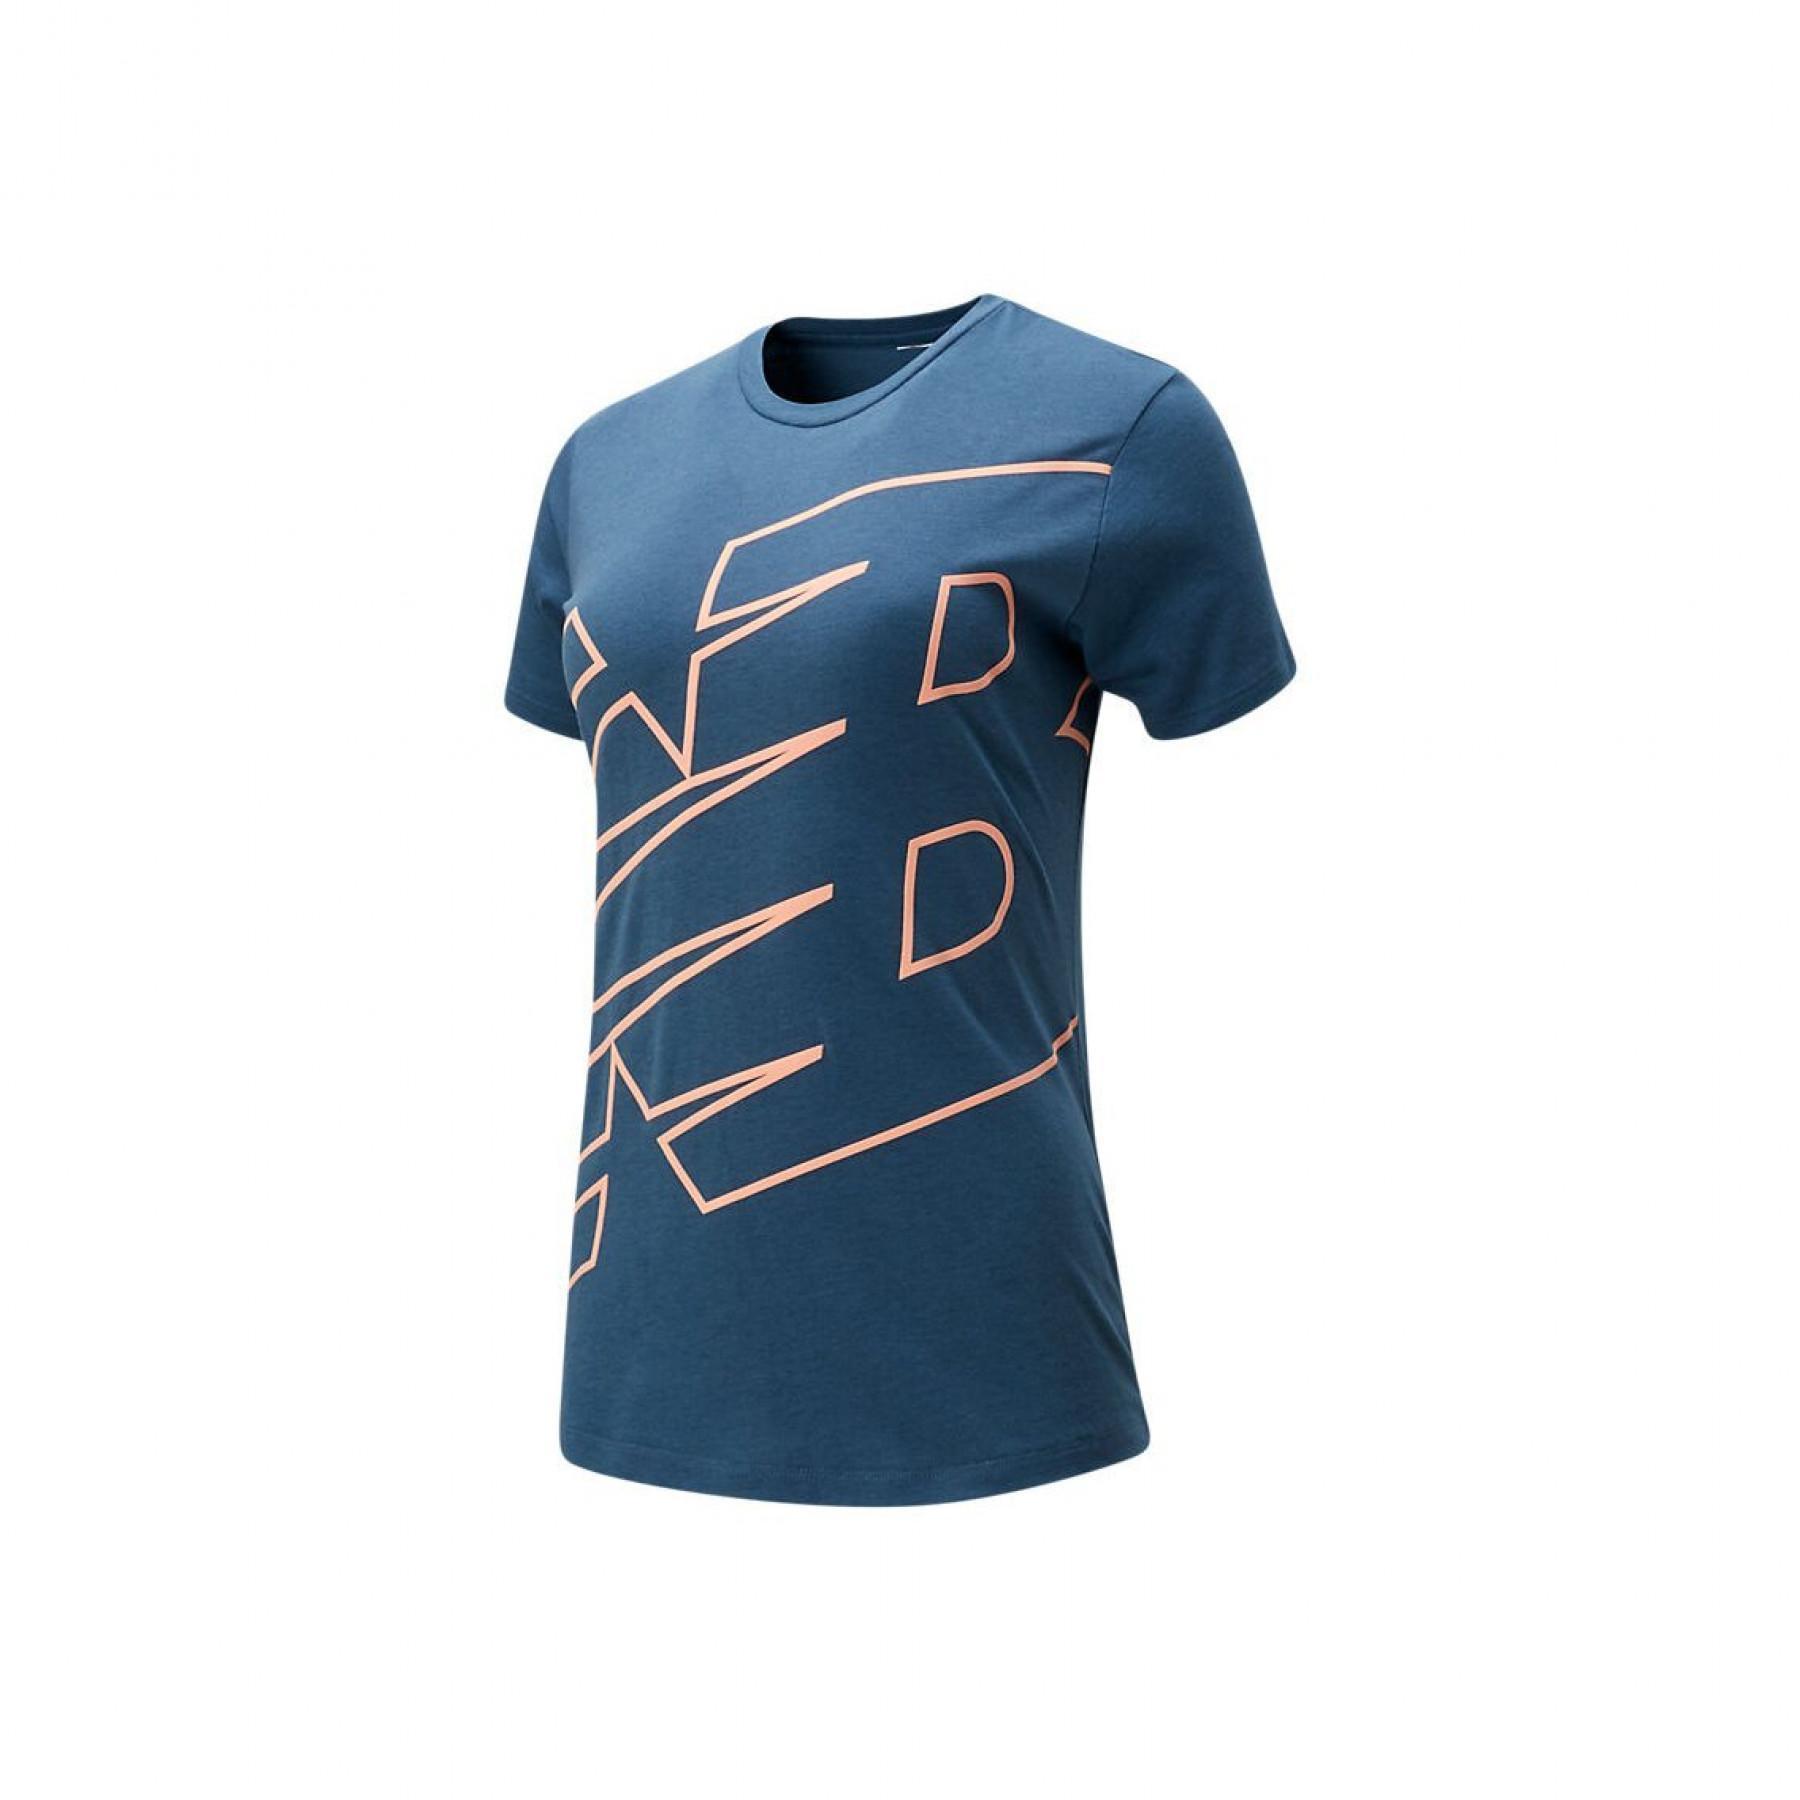 Women's T-shirt New Balance WT01158